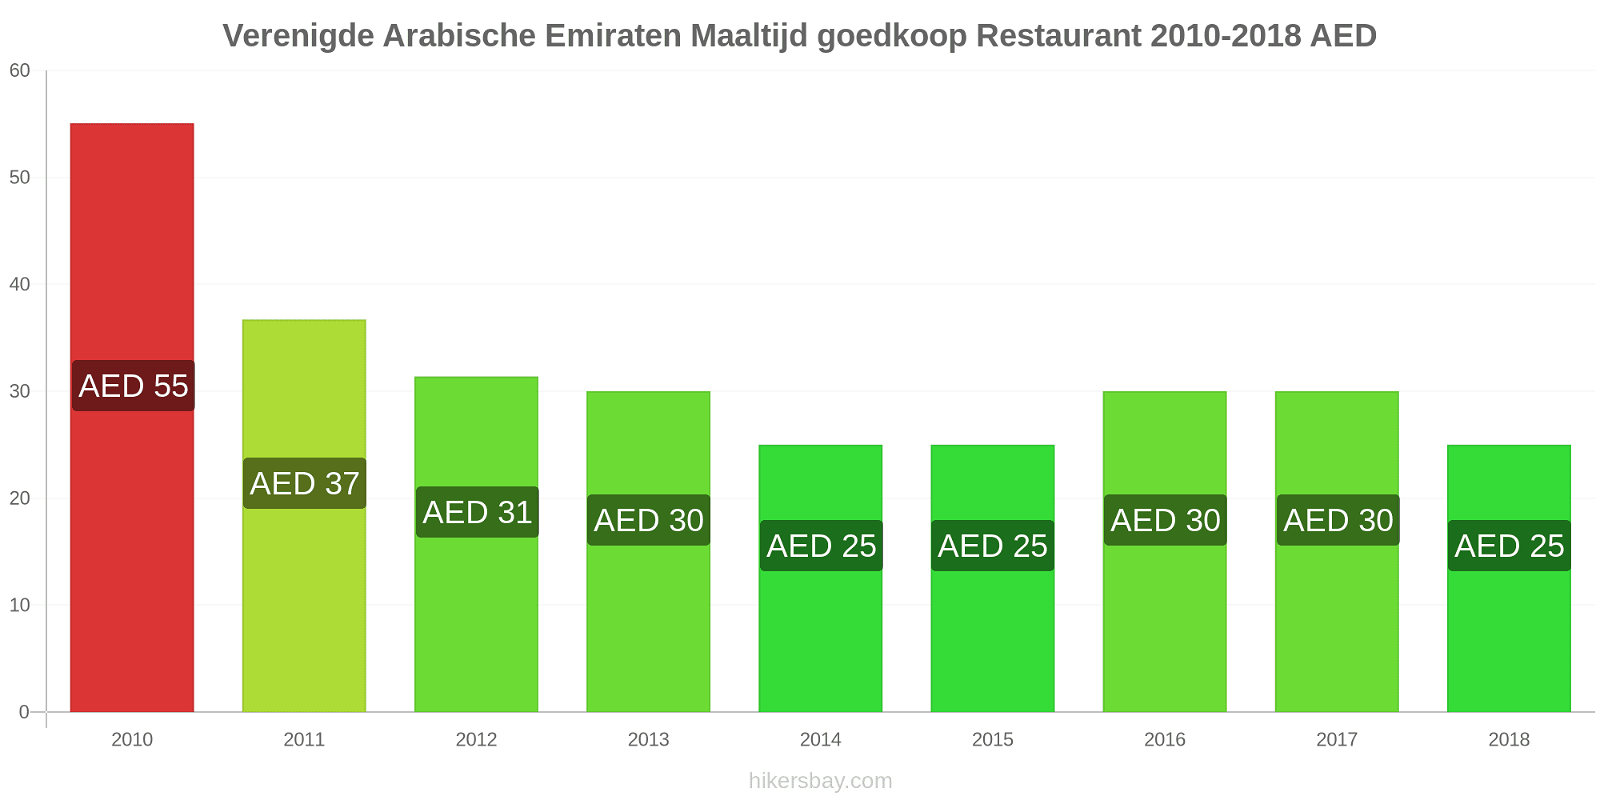 Verenigde Arabische Emiraten prijswijzigingen Maaltijd in een goedkoop restaurant hikersbay.com